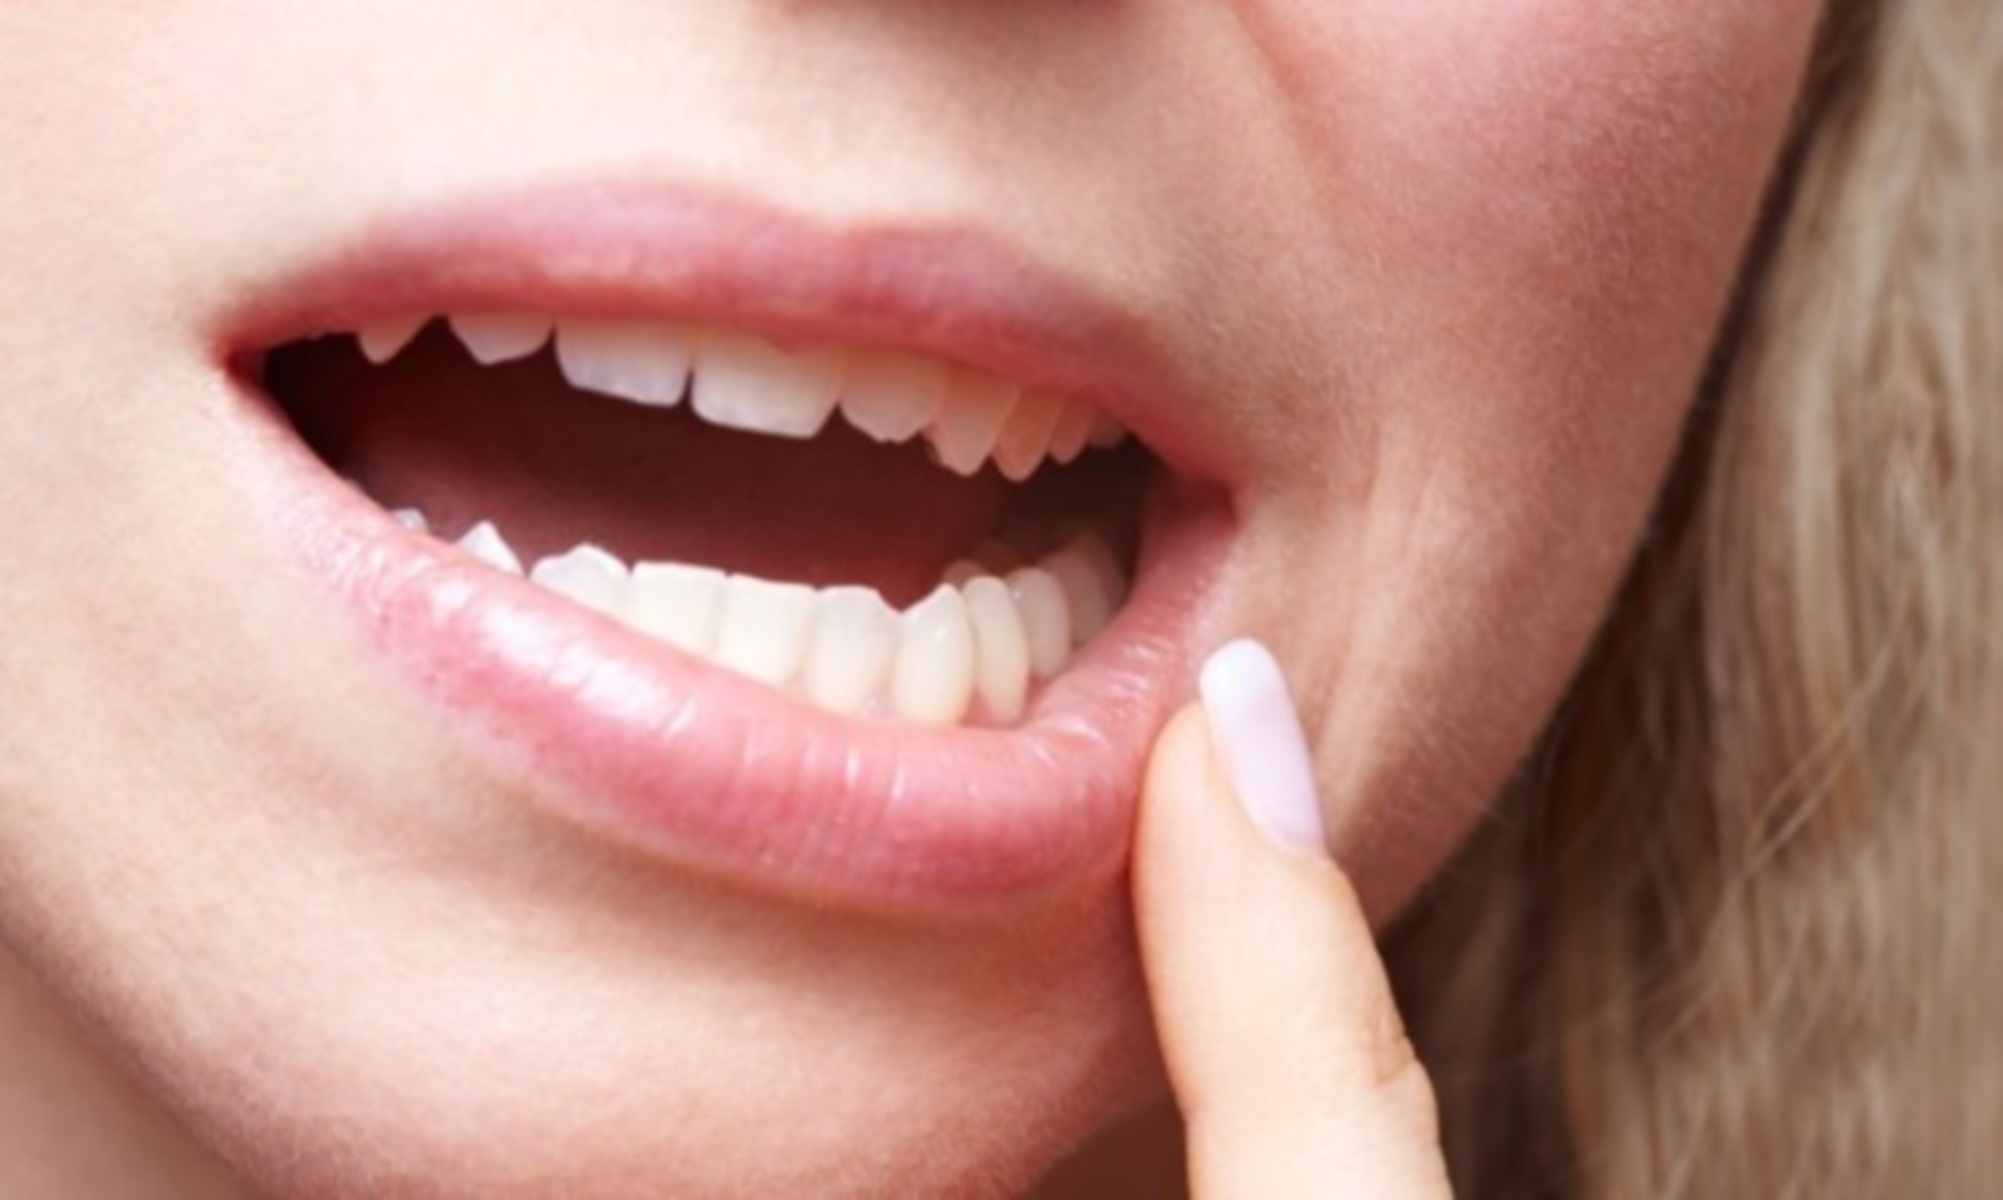 Ηράκλειο: Νηπιαγωγός στην εντατική μετά από εξαγωγή δοντιού – Τι λέει ο οδοντίατρος